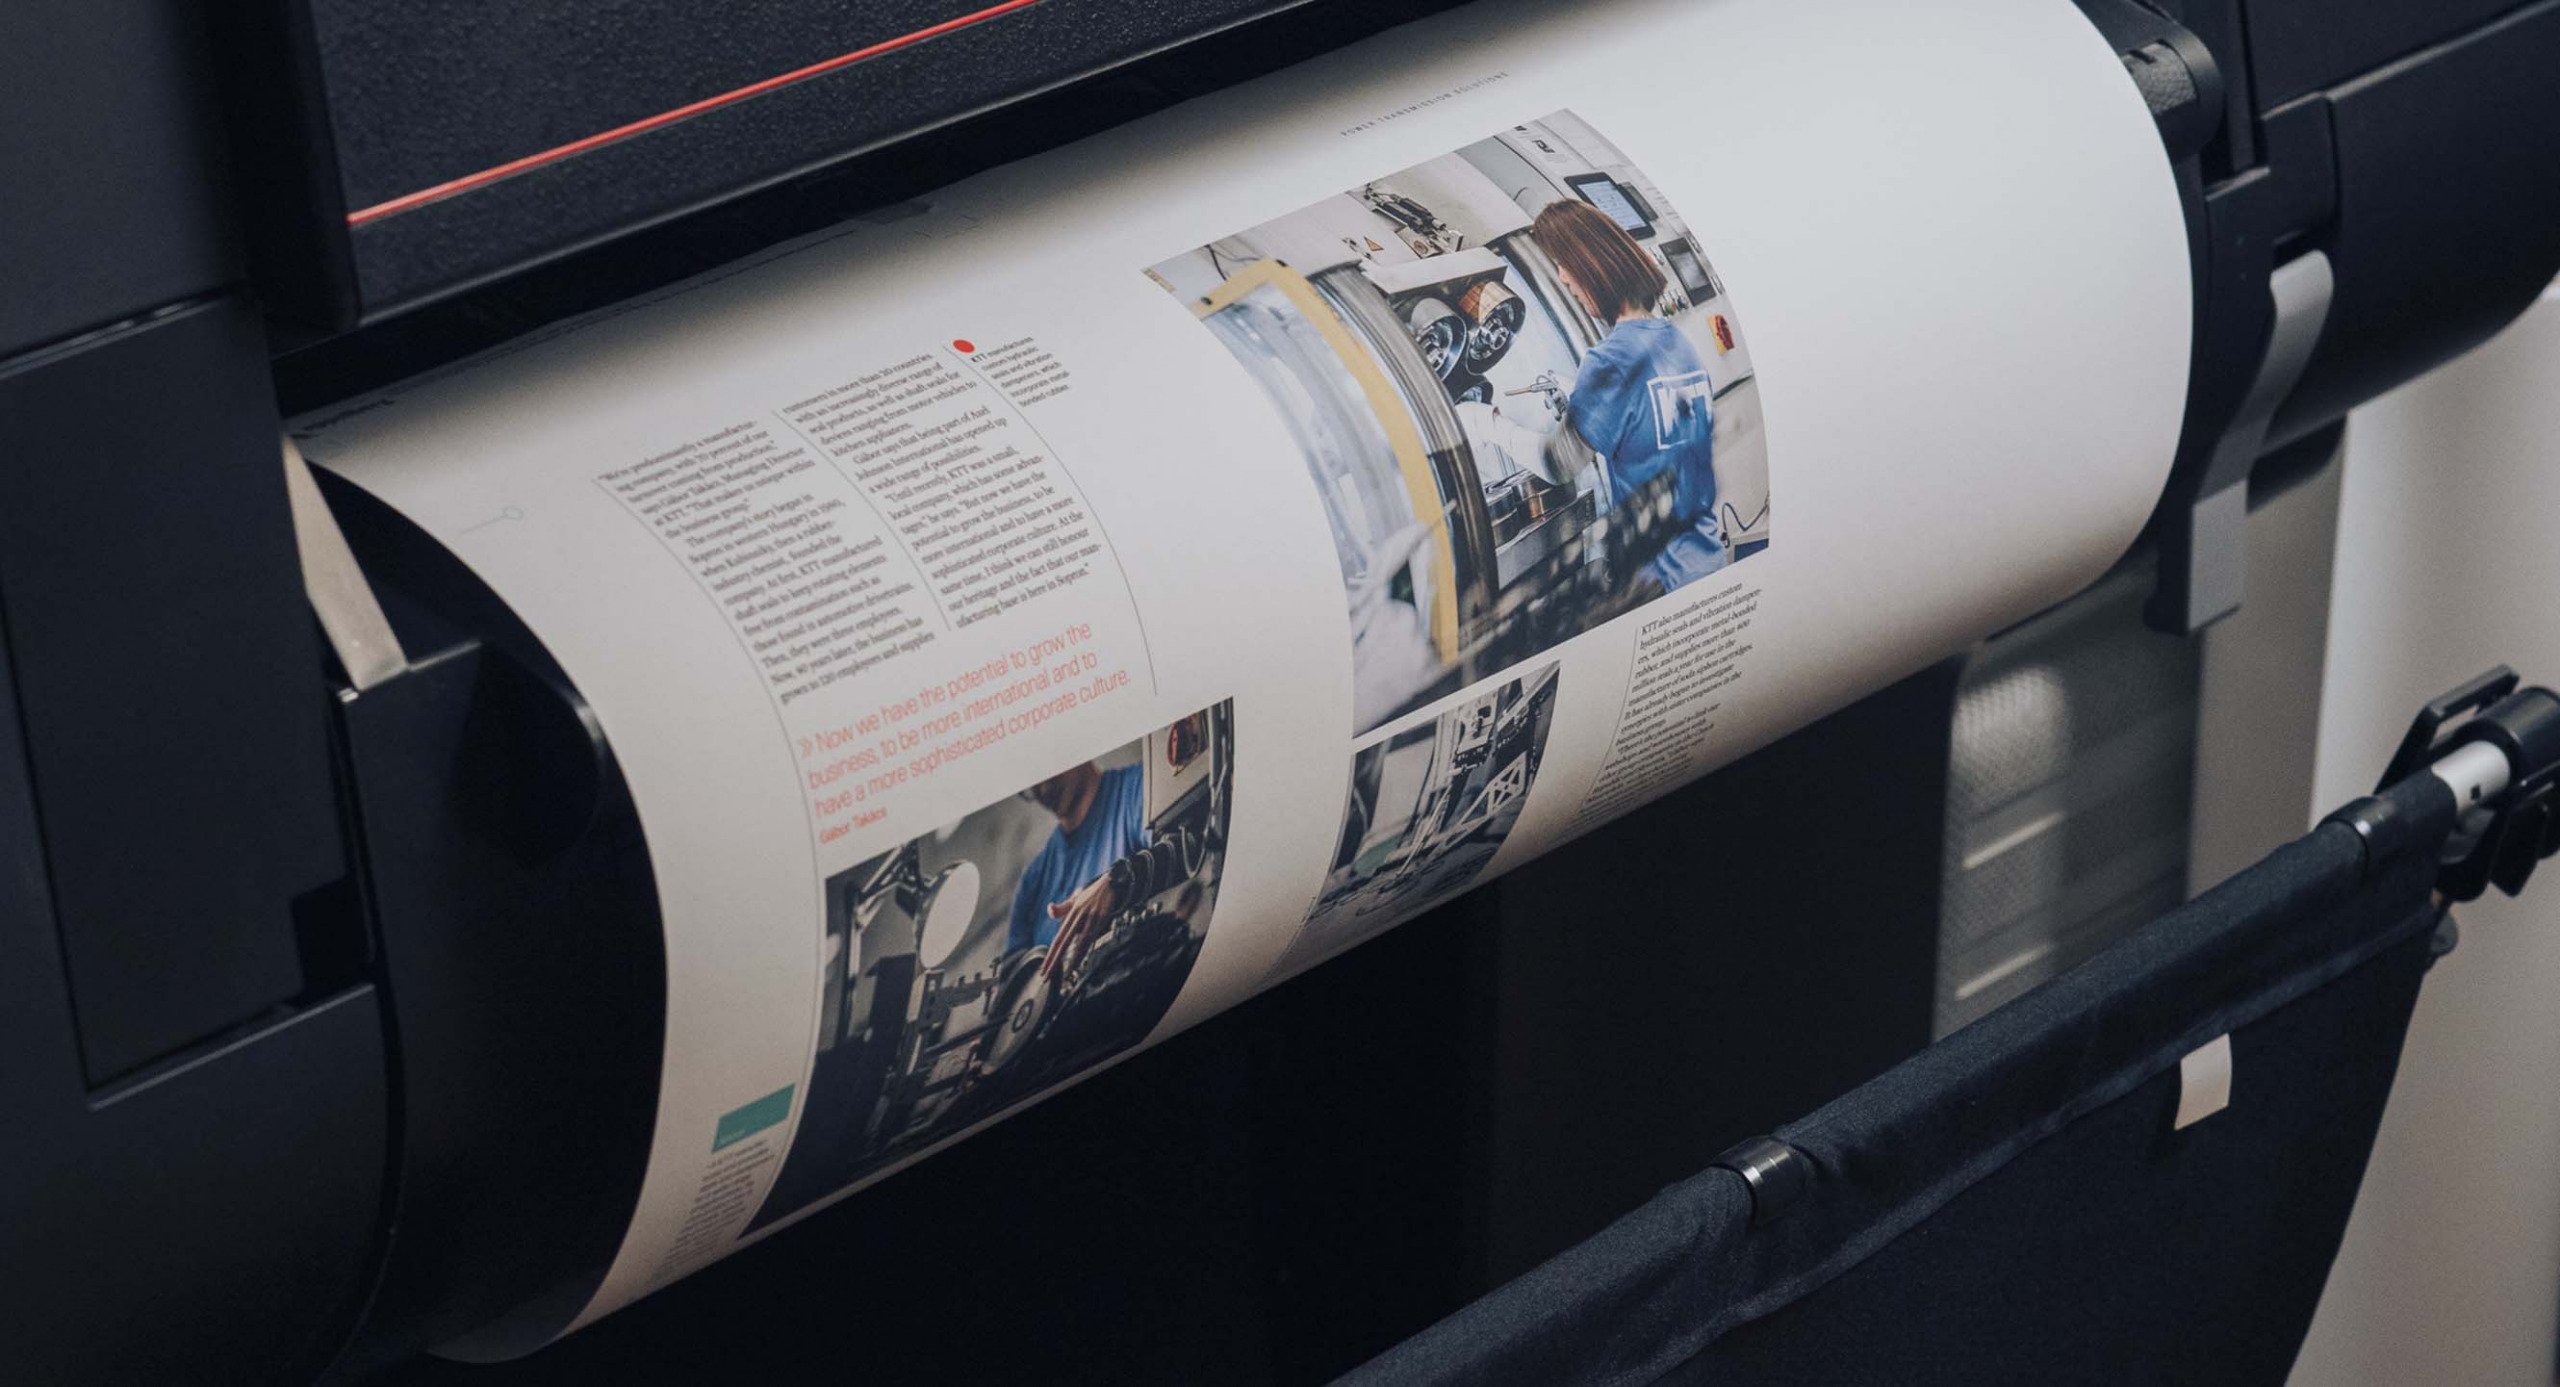 En tryckt tidning leveras från en skrivare för en printkampanj.